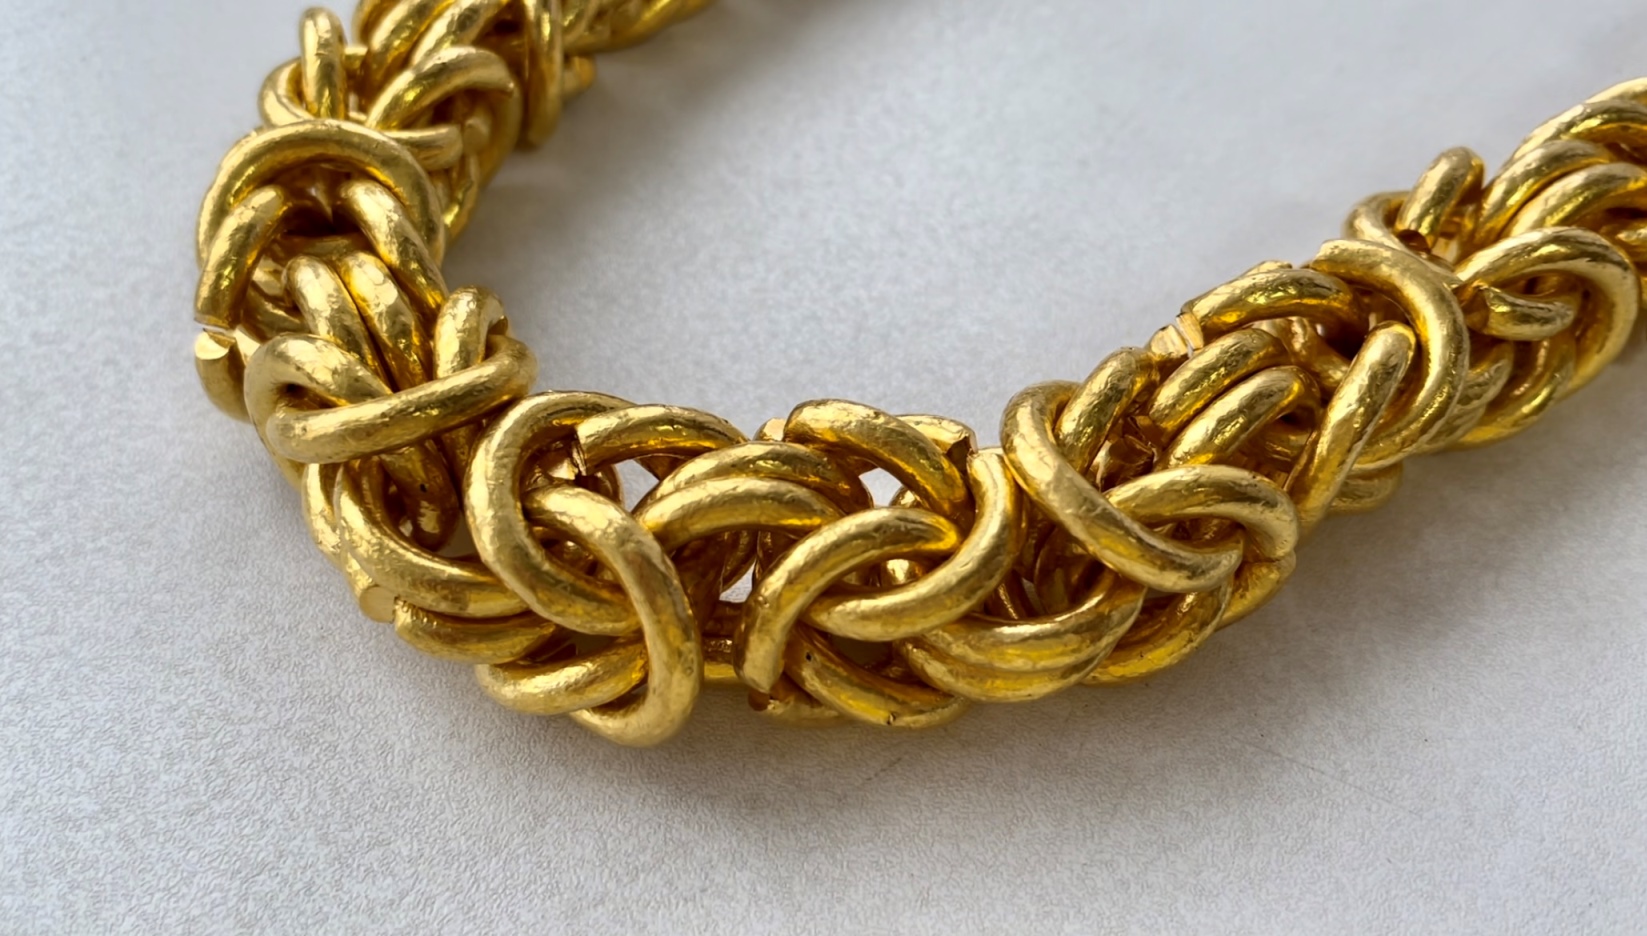 Золотая цепь, найденная в багаже. Фото © Федеральная таможенная служба